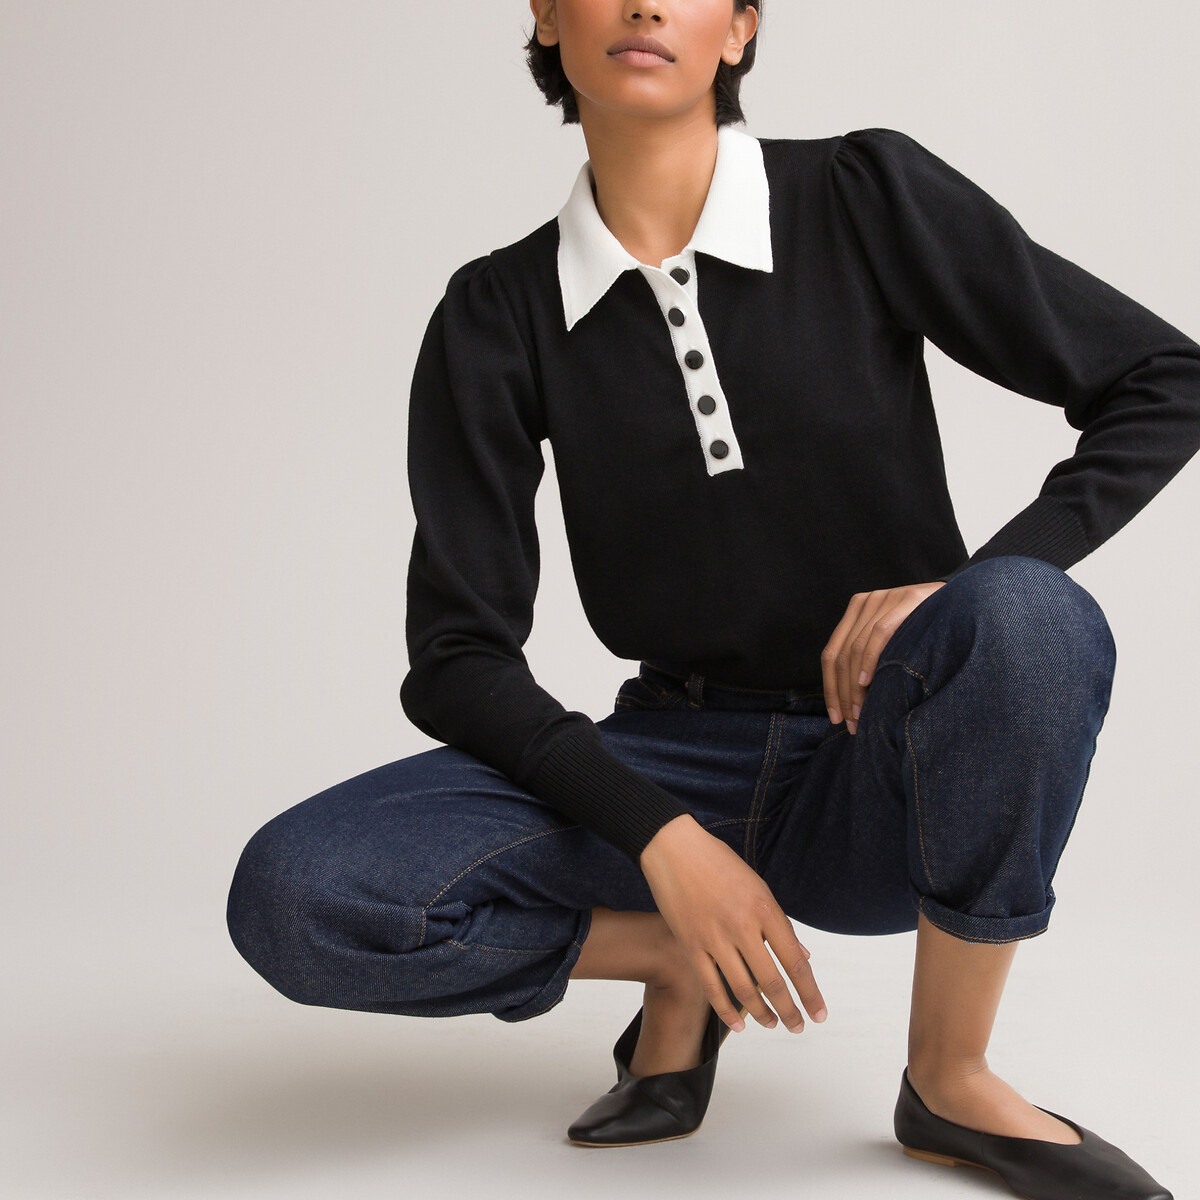 Пуловер LaRedoute С воротником-поло двухцветный декоративные пуговицы M черный, размер M - фото 2